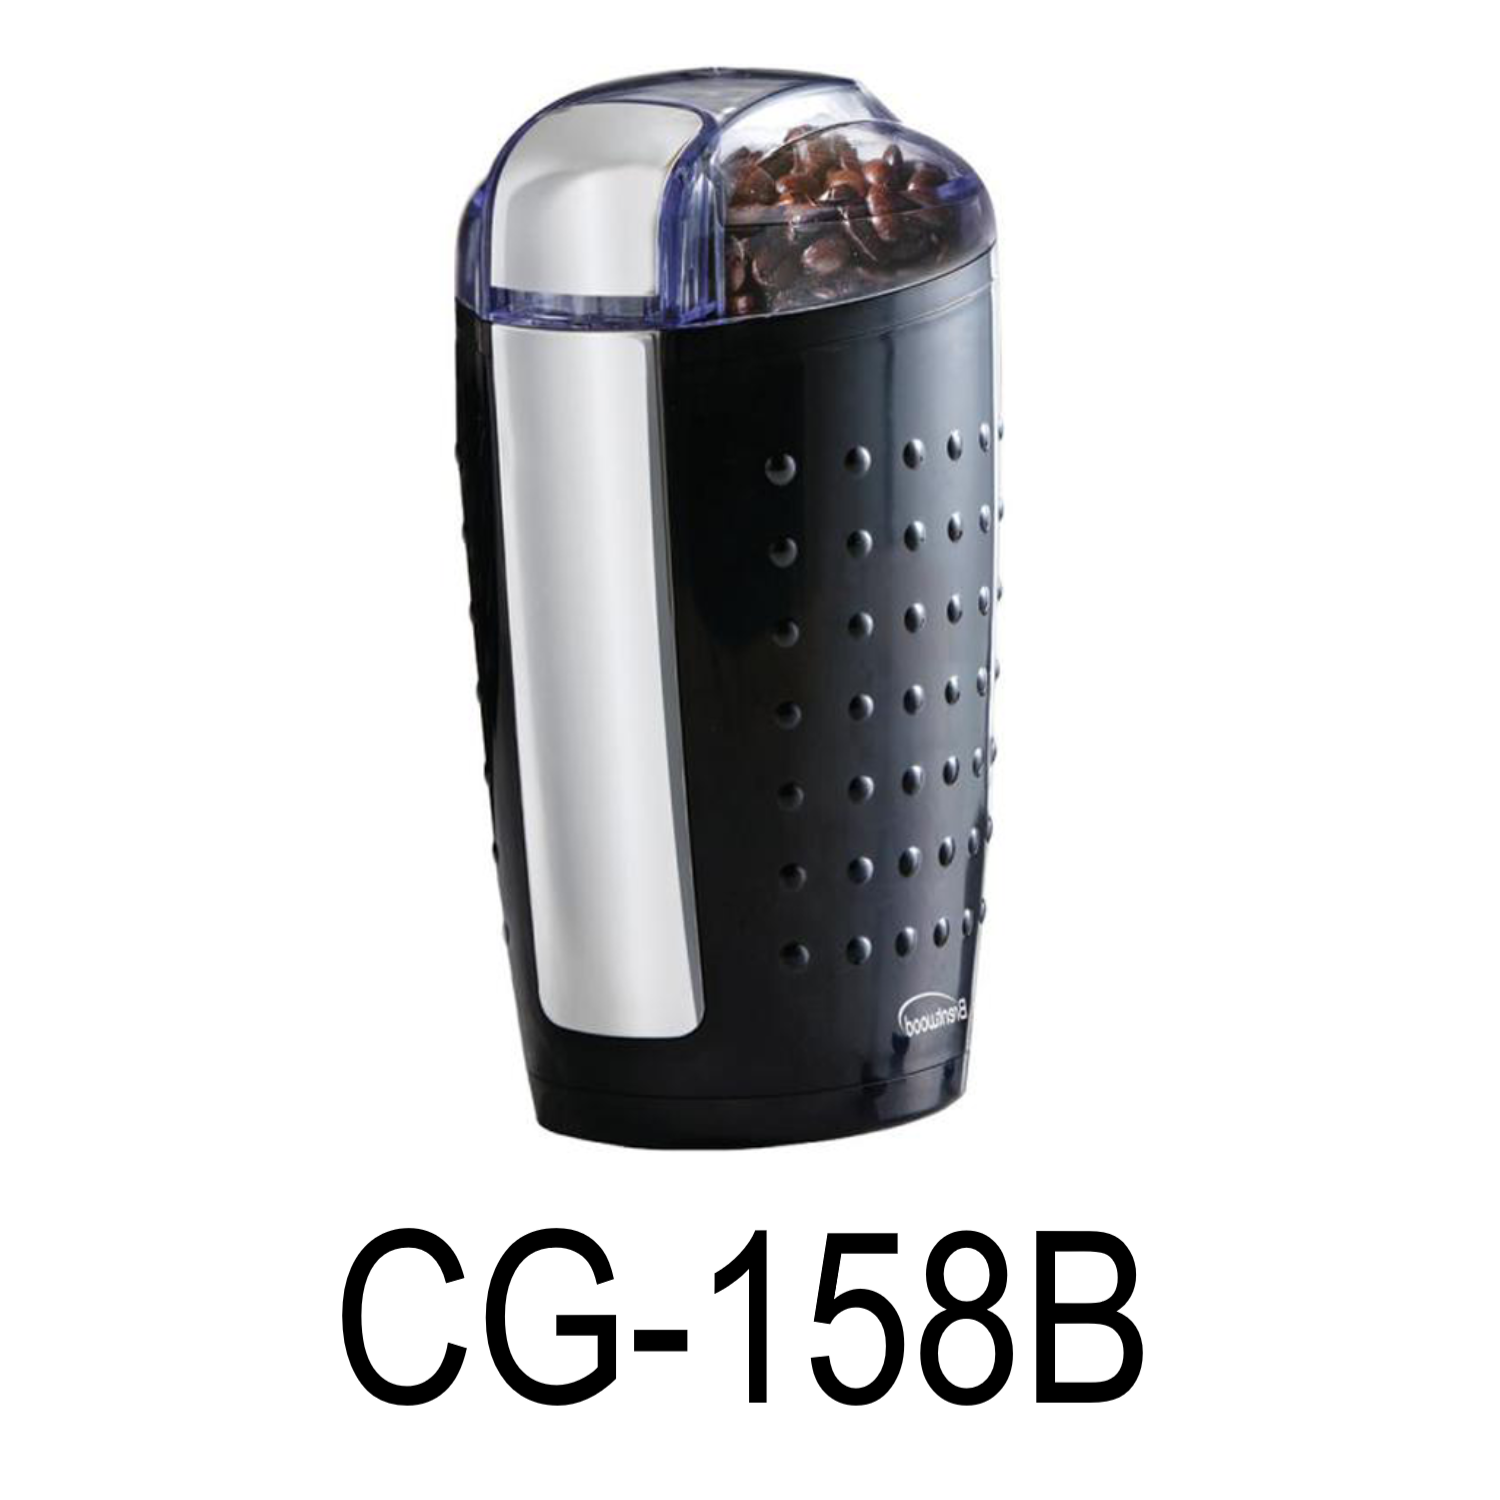 Brentwood CG-158b Coffee Grinder (Black)